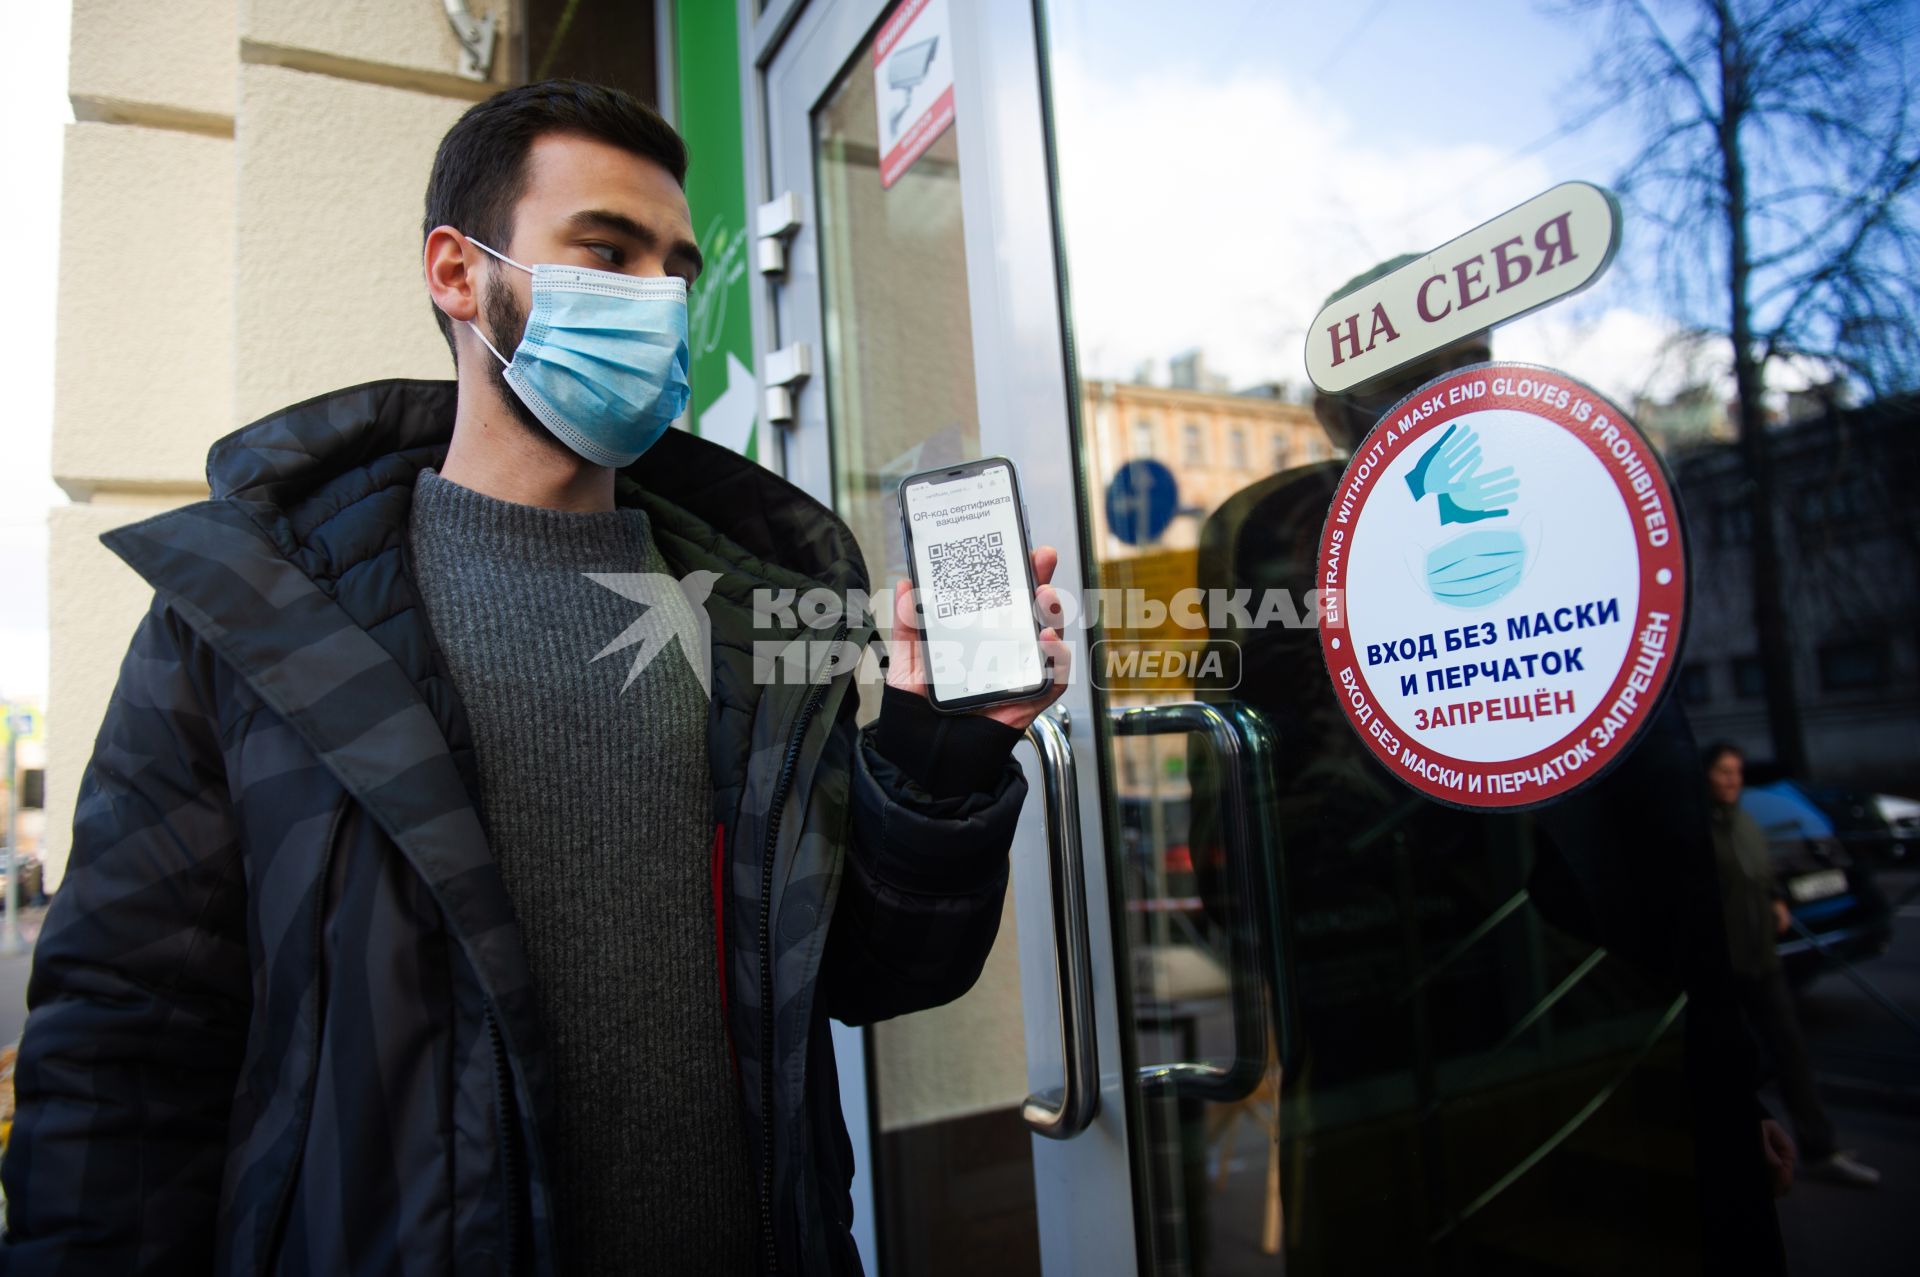 Санкт-Петербург. Юноша в маске и мобильным телефоном, на экране которого отображен QR-код, заходит в торговый центр. Наклейка на двери ТЦ `Вход без маски и перчаток запрещен`.